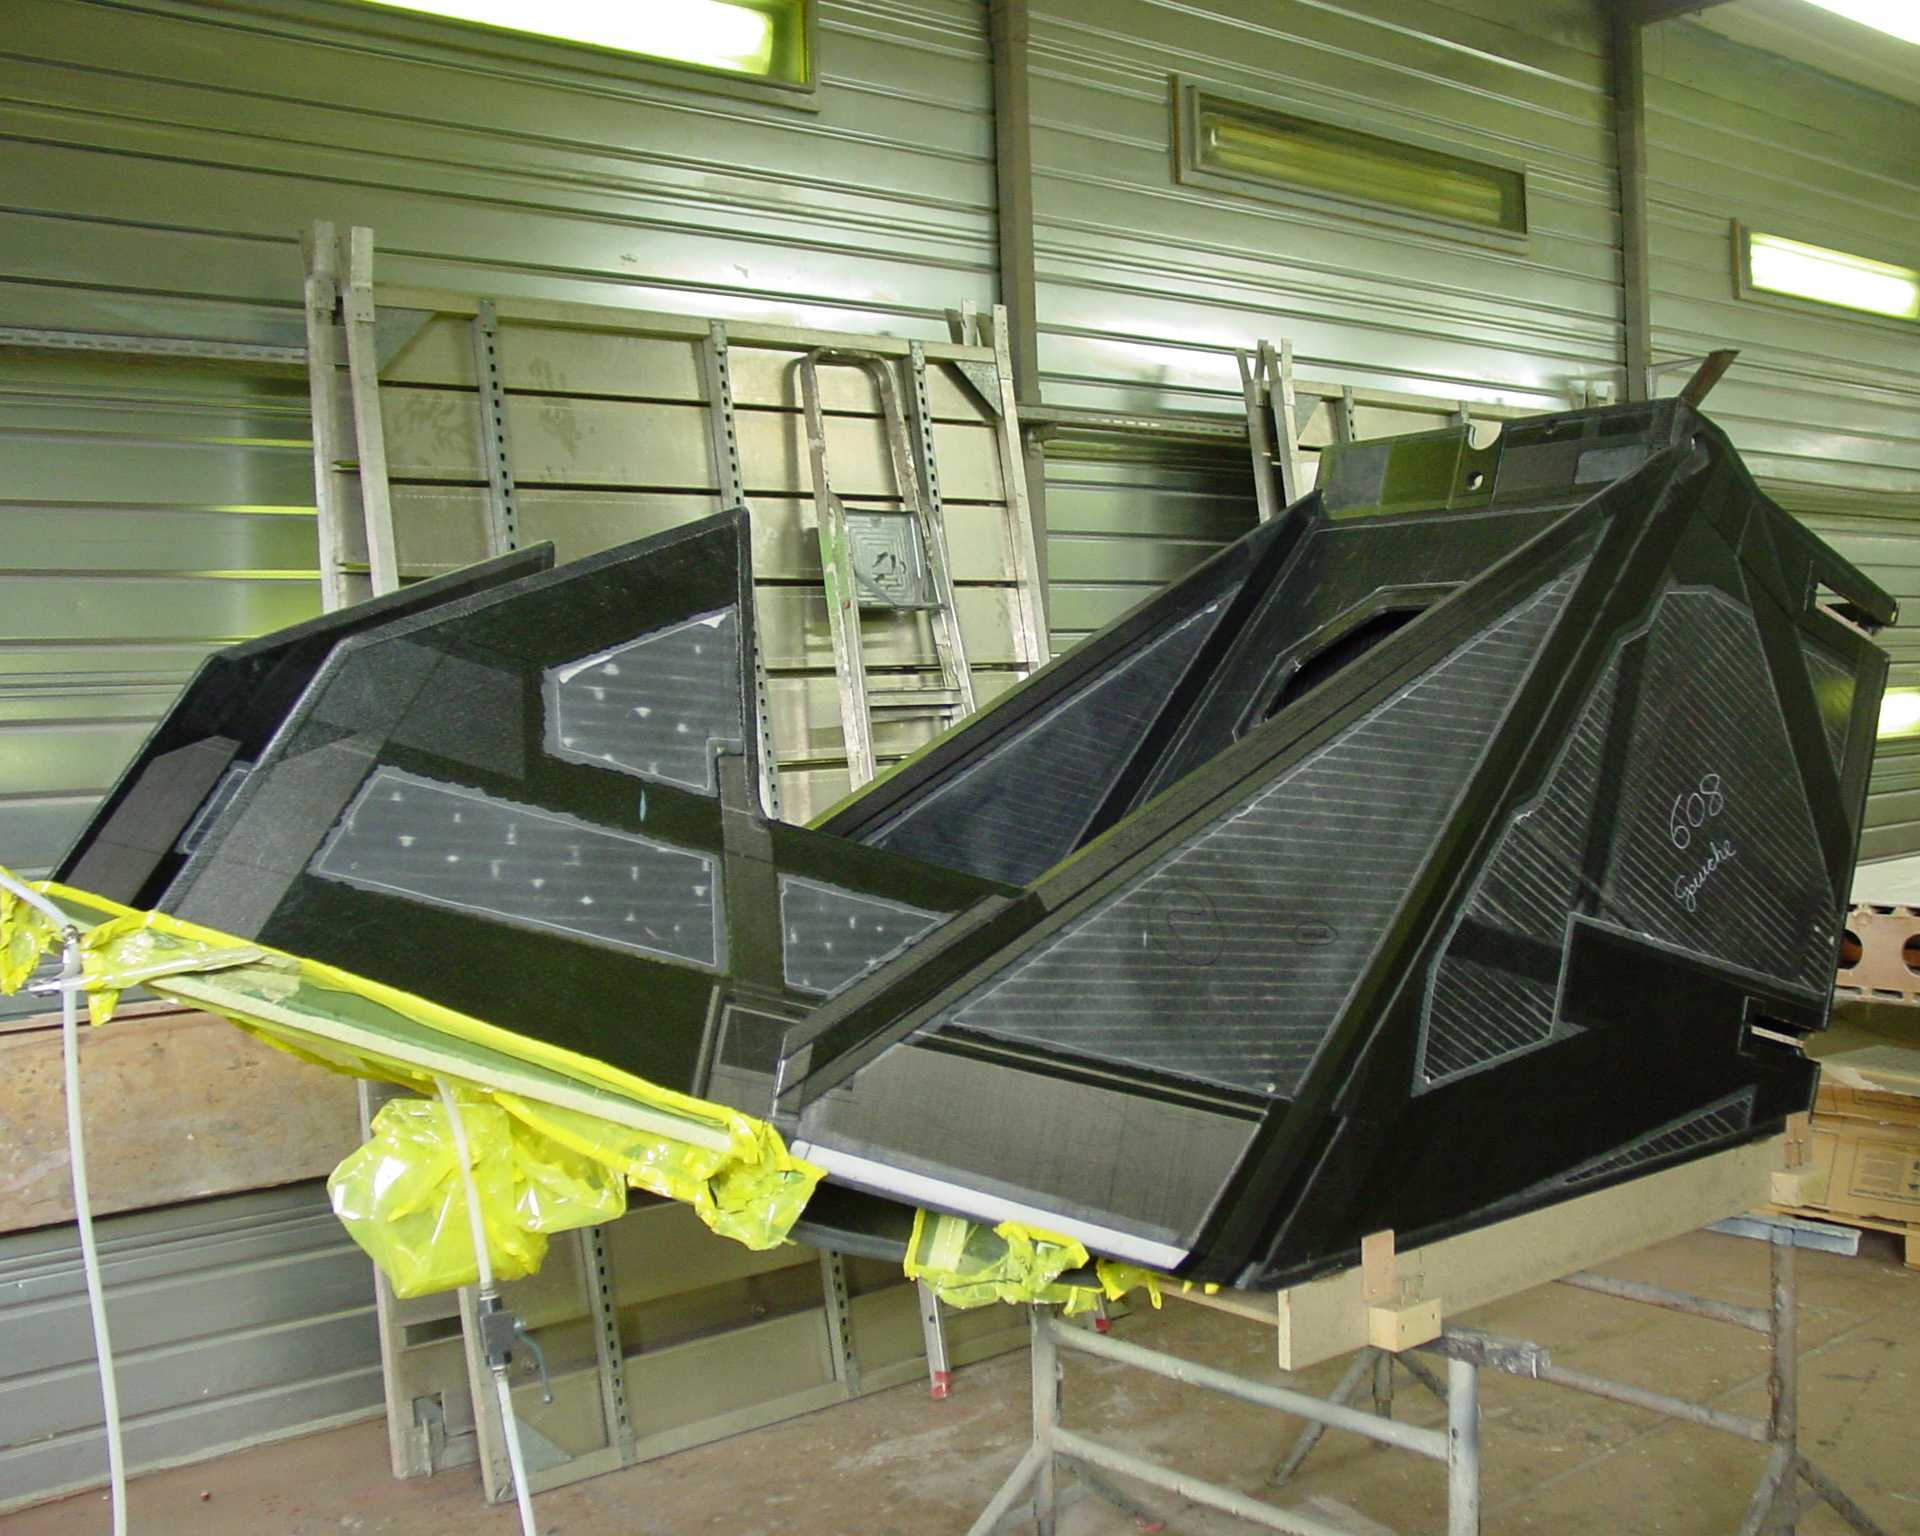 SolarImpulse HB-SIA